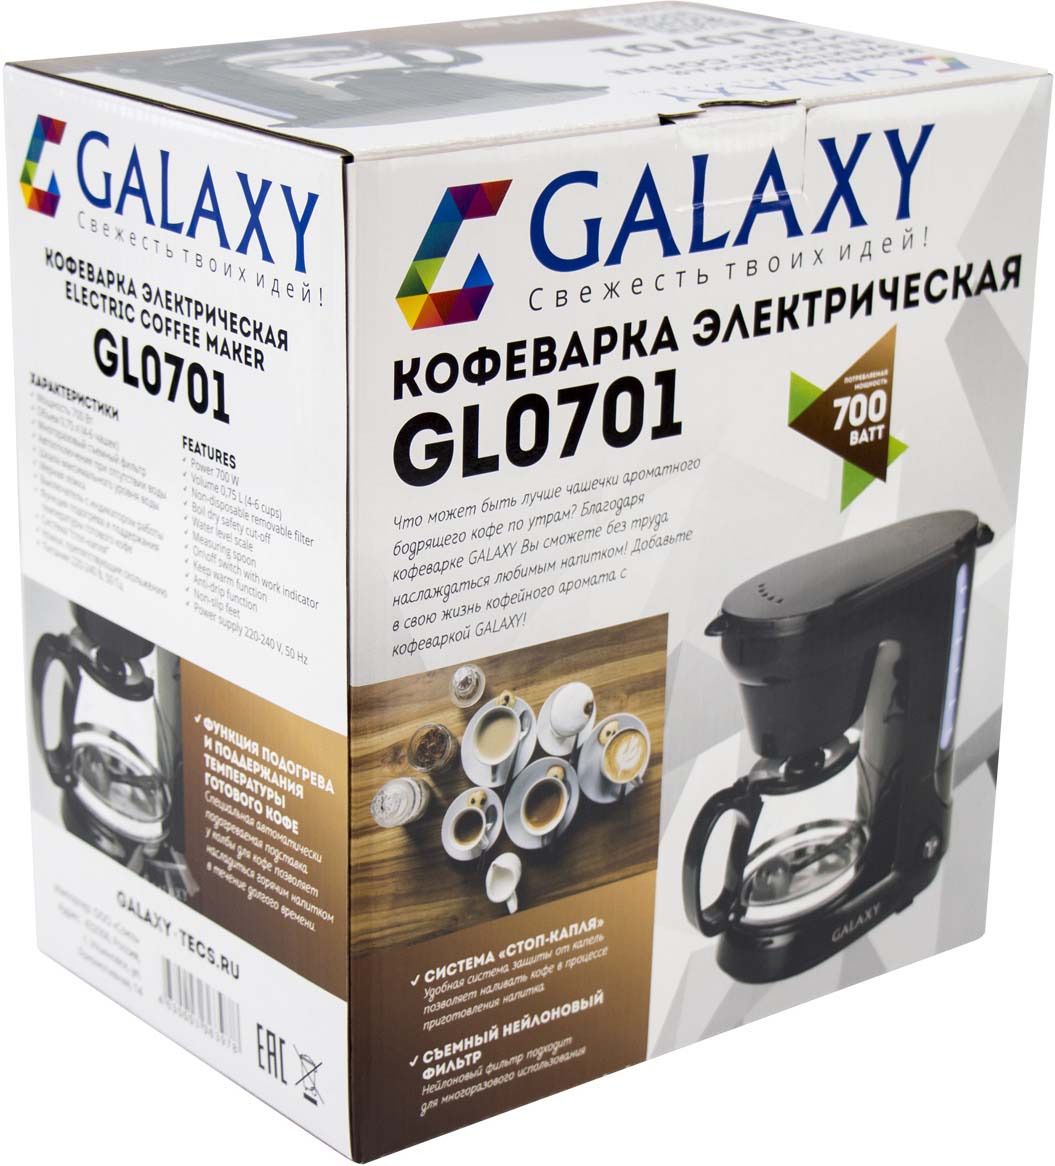   Galaxy GL 0701, : 